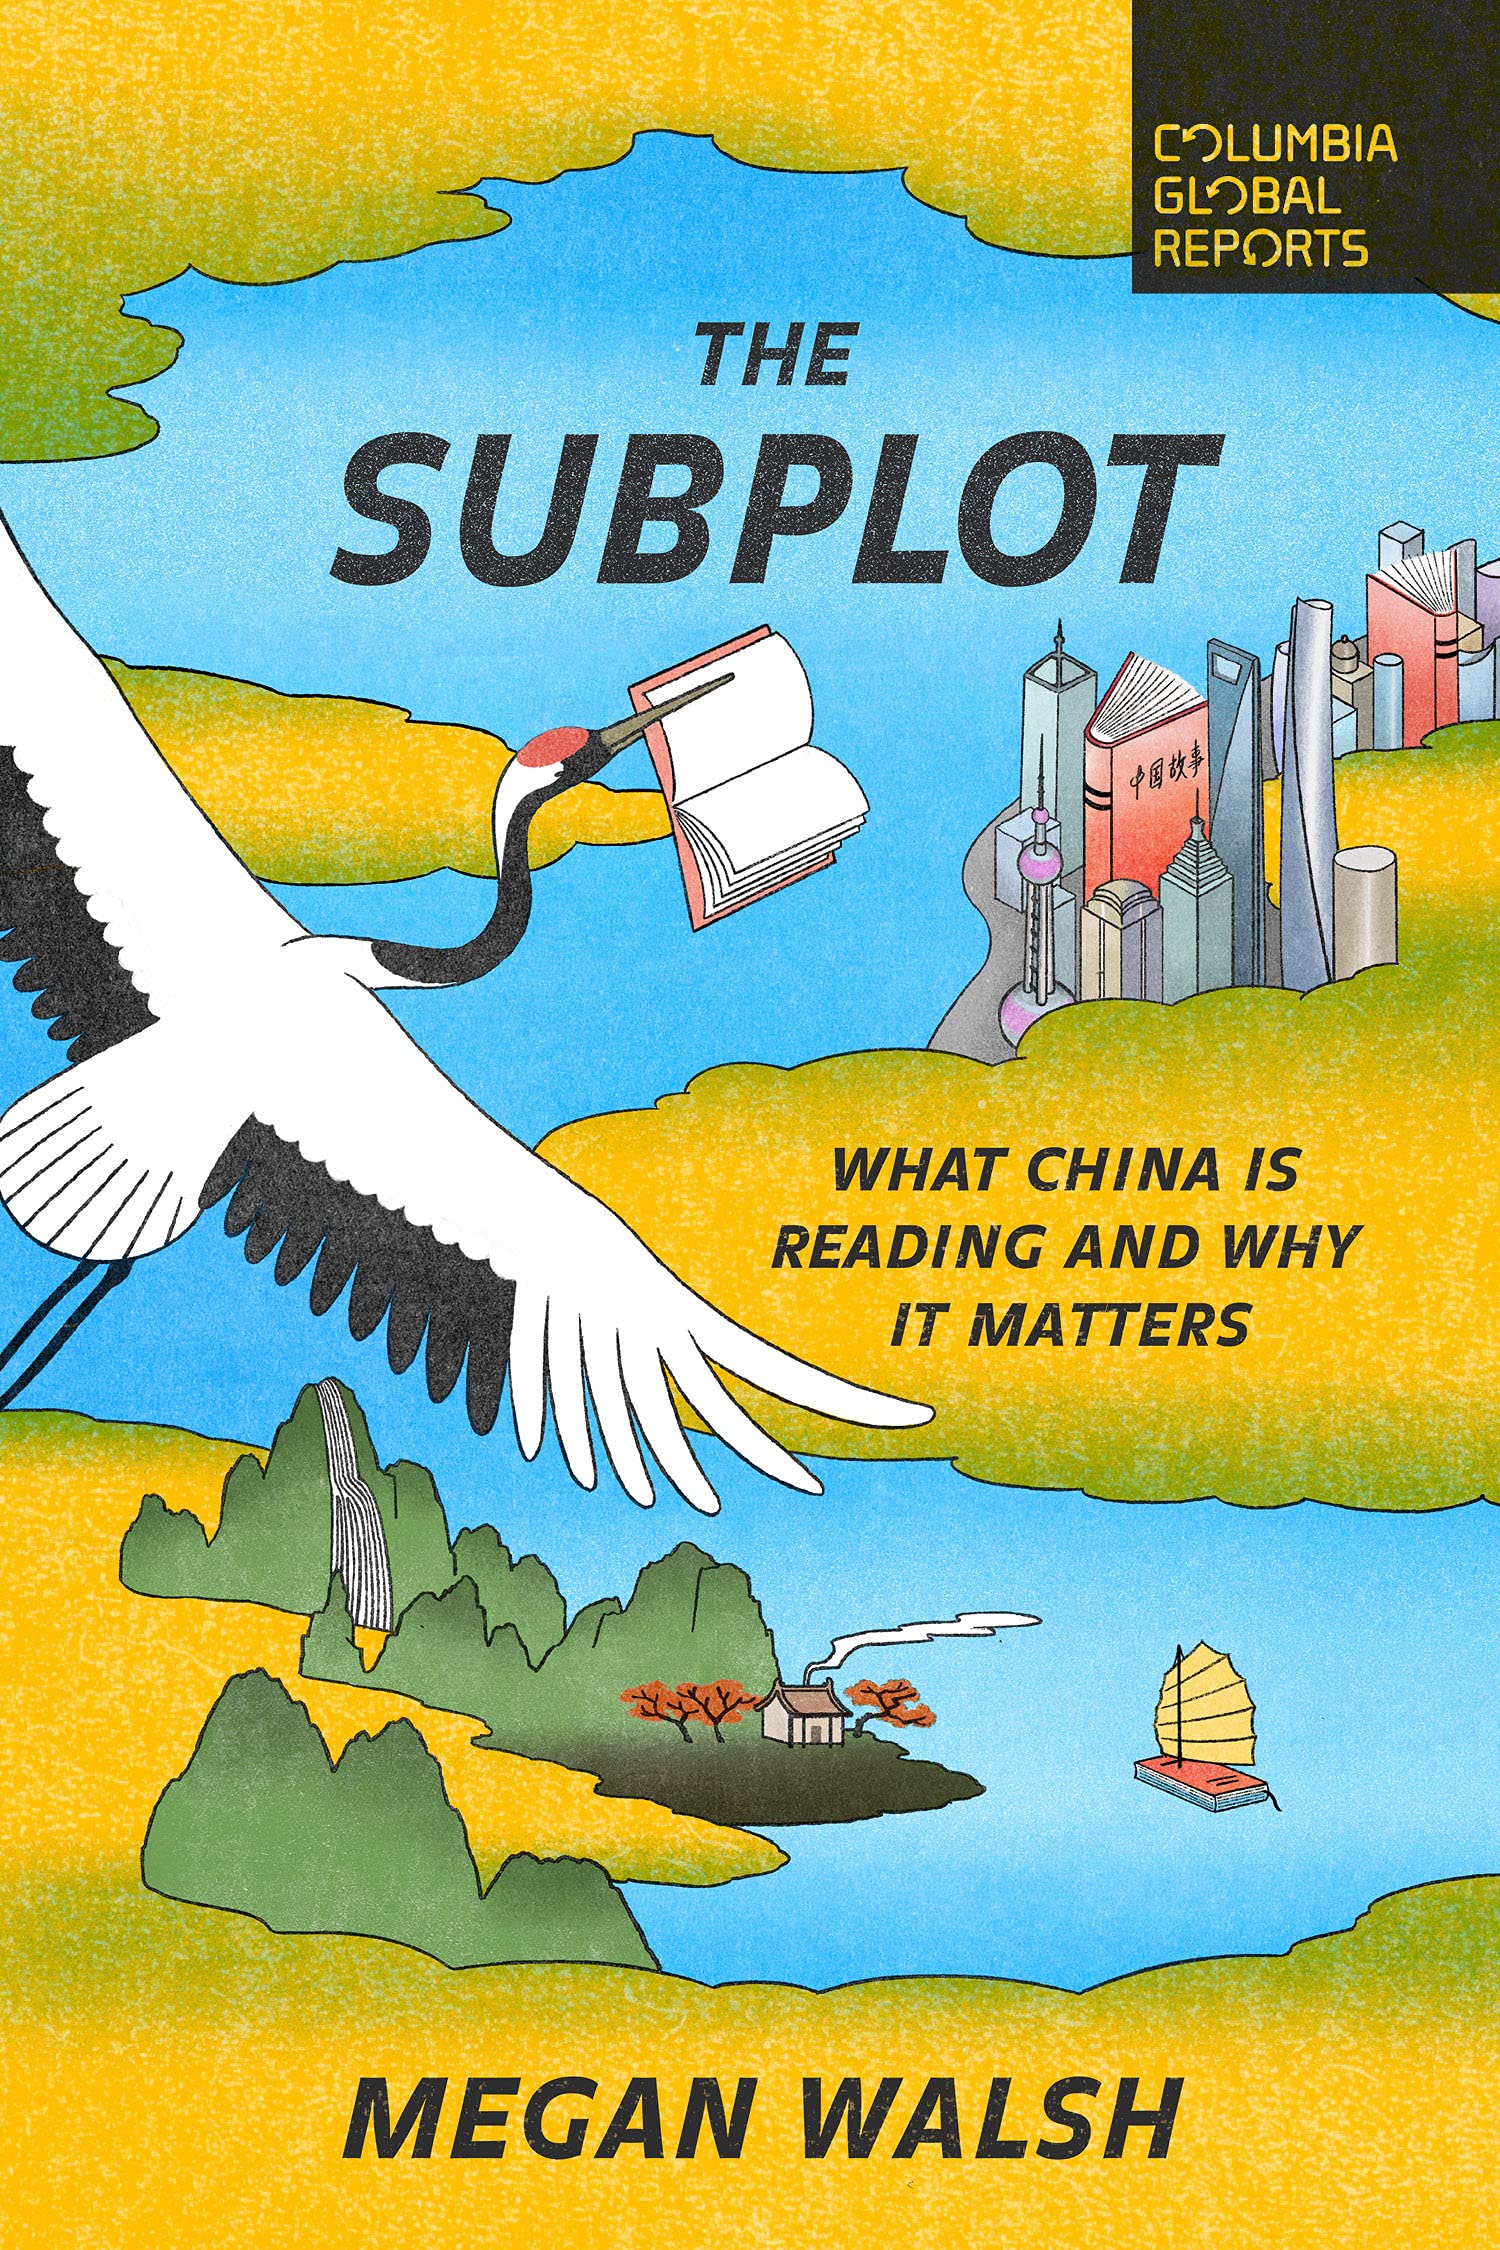 The subplots of China